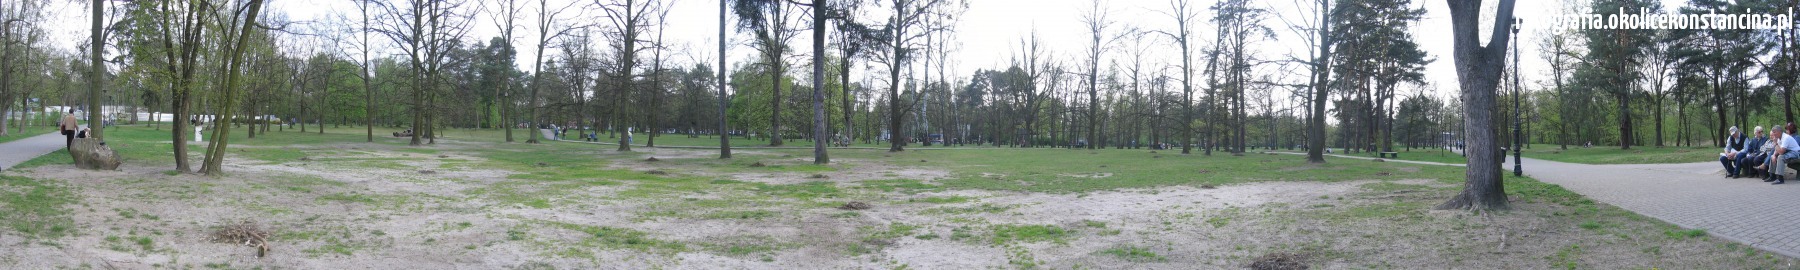 panorama_park